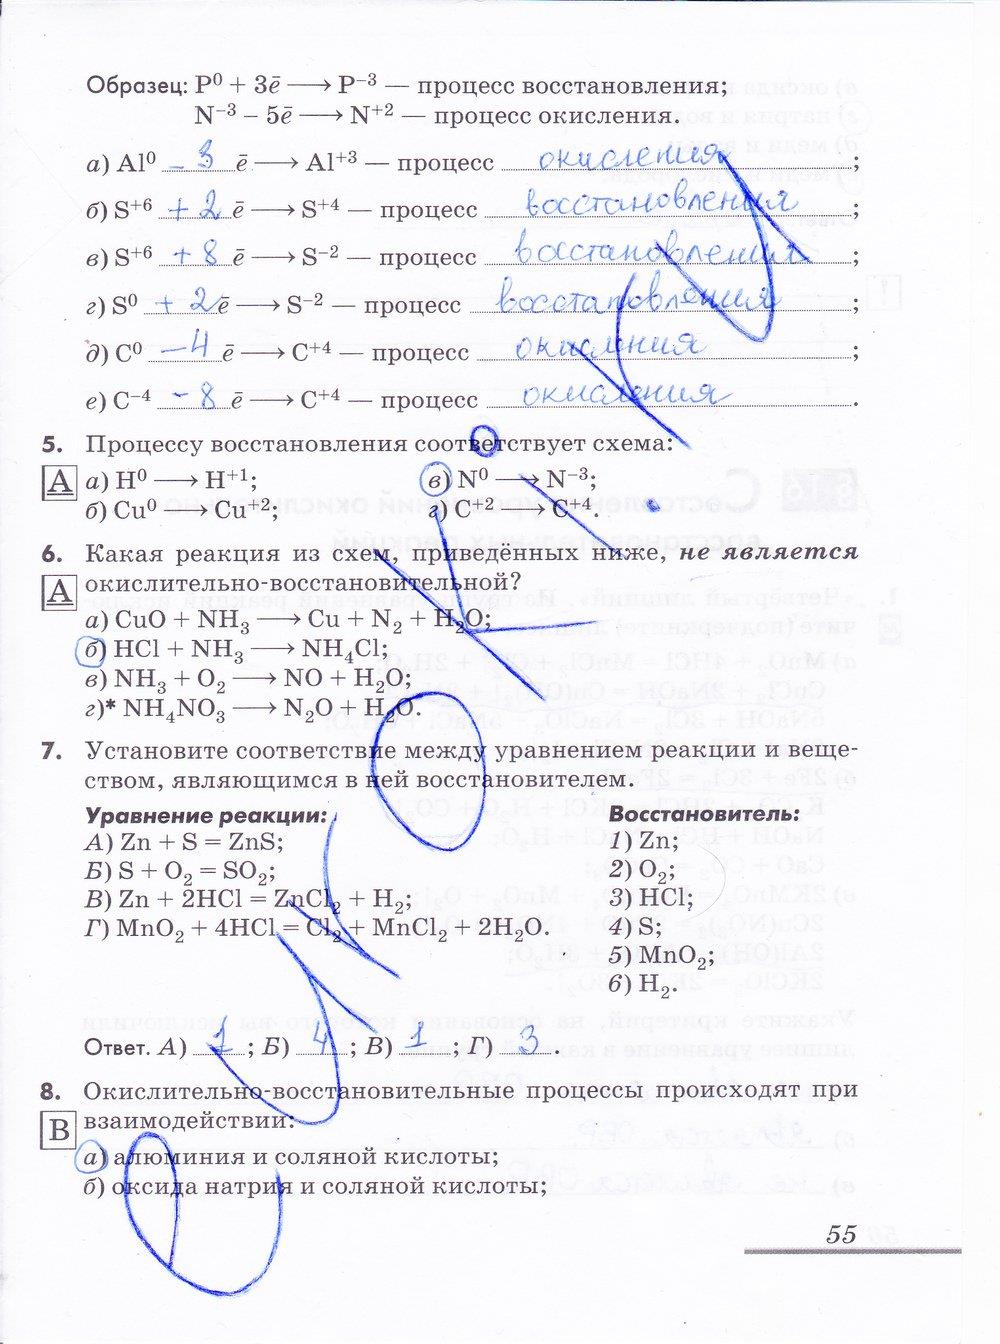 гдз 9 класс рабочая тетрадь страница 55 химия Еремин, Дроздов